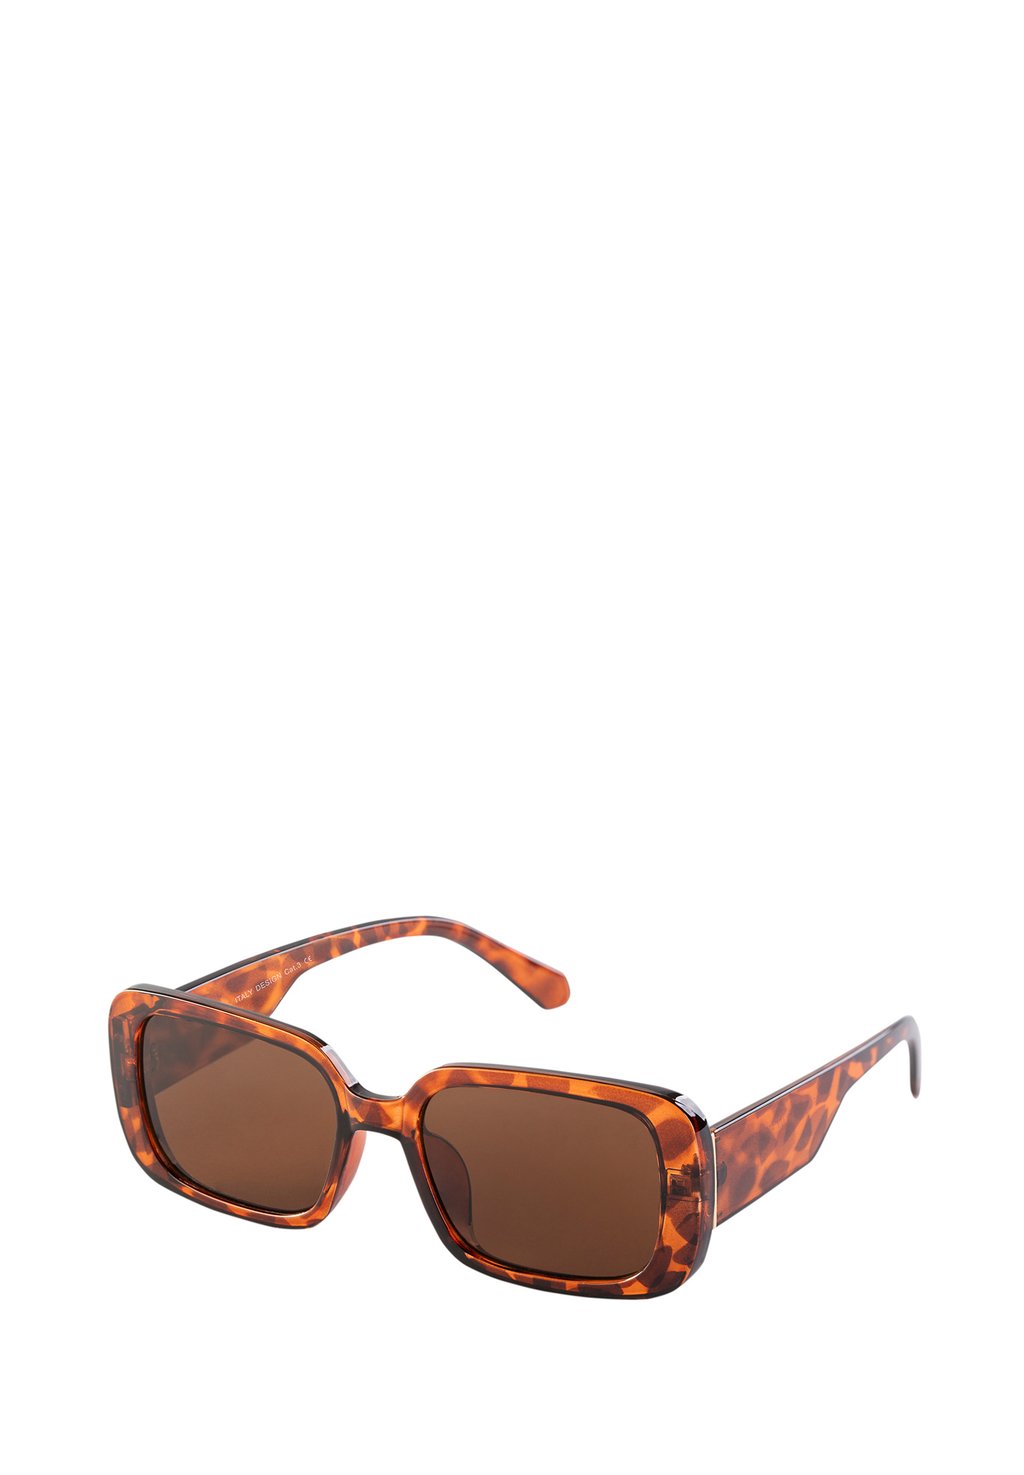 Солнцезащитные очки Feba Swimwear, коричневый